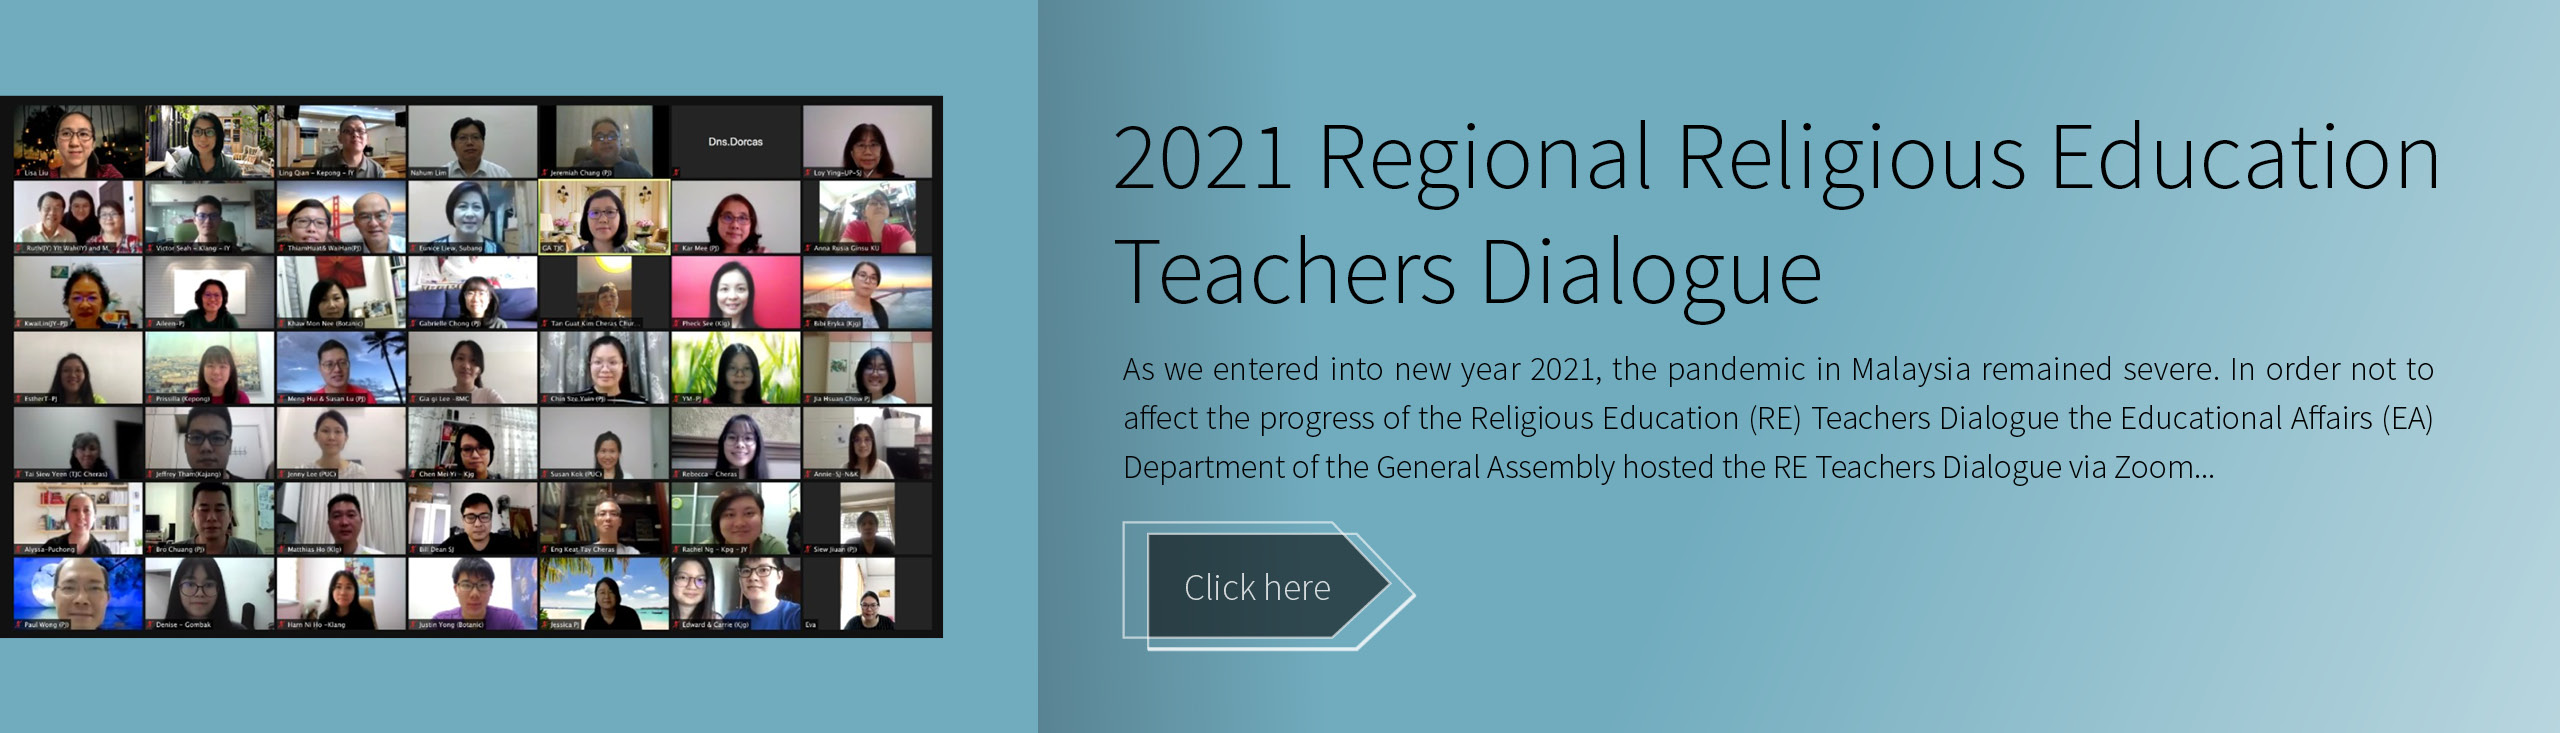 Banners_RE_2021 Regional Religious Education Teachers Dialogue_EN